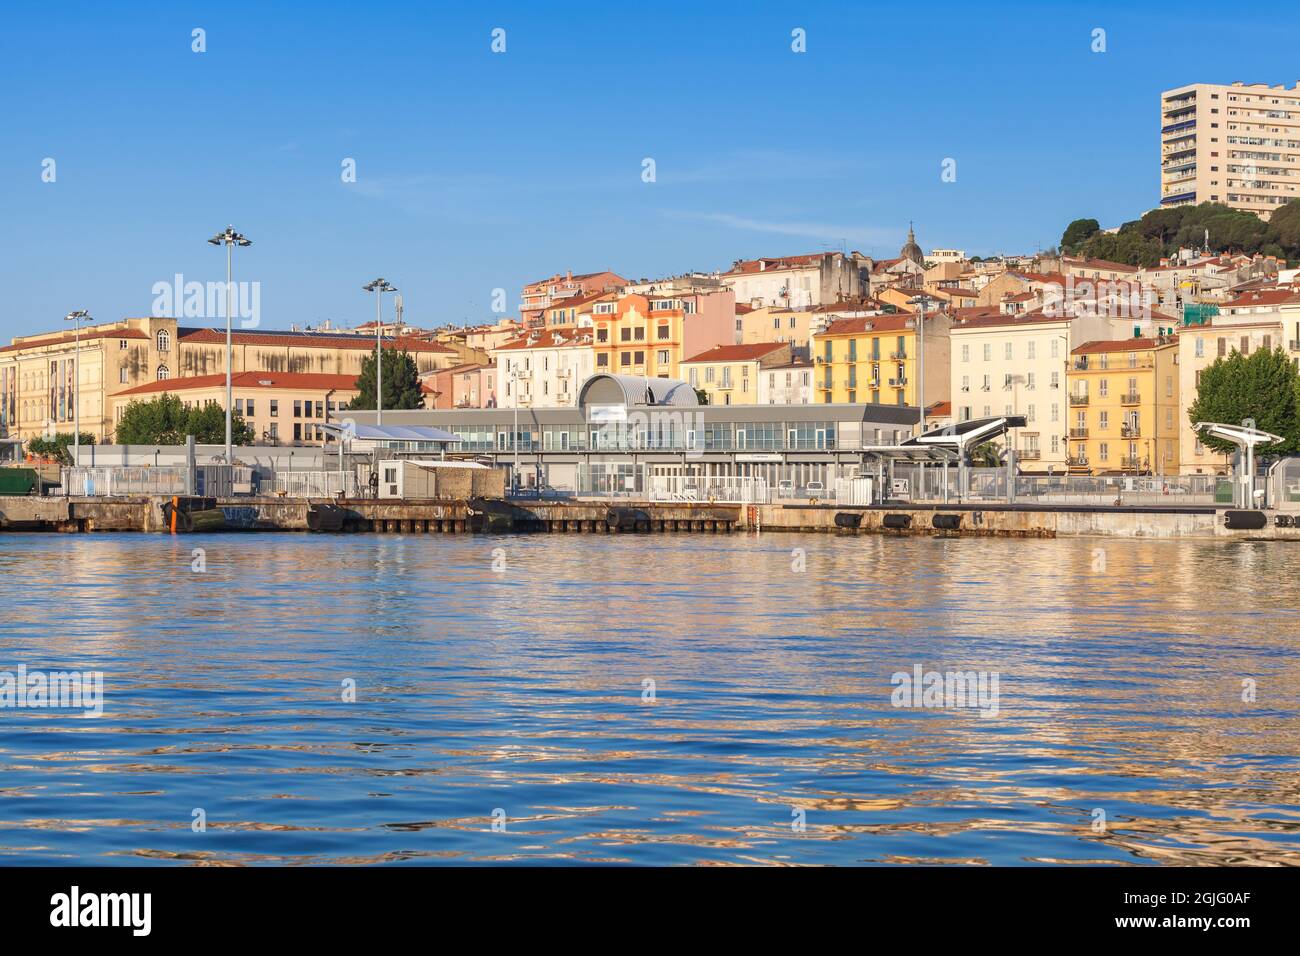 Ajaccio, France - 30 juin 2015 : port d'Ajaccio, vue côtière d'été sur le bord de mer avec terminal de ferry de fret. Corse Banque D'Images